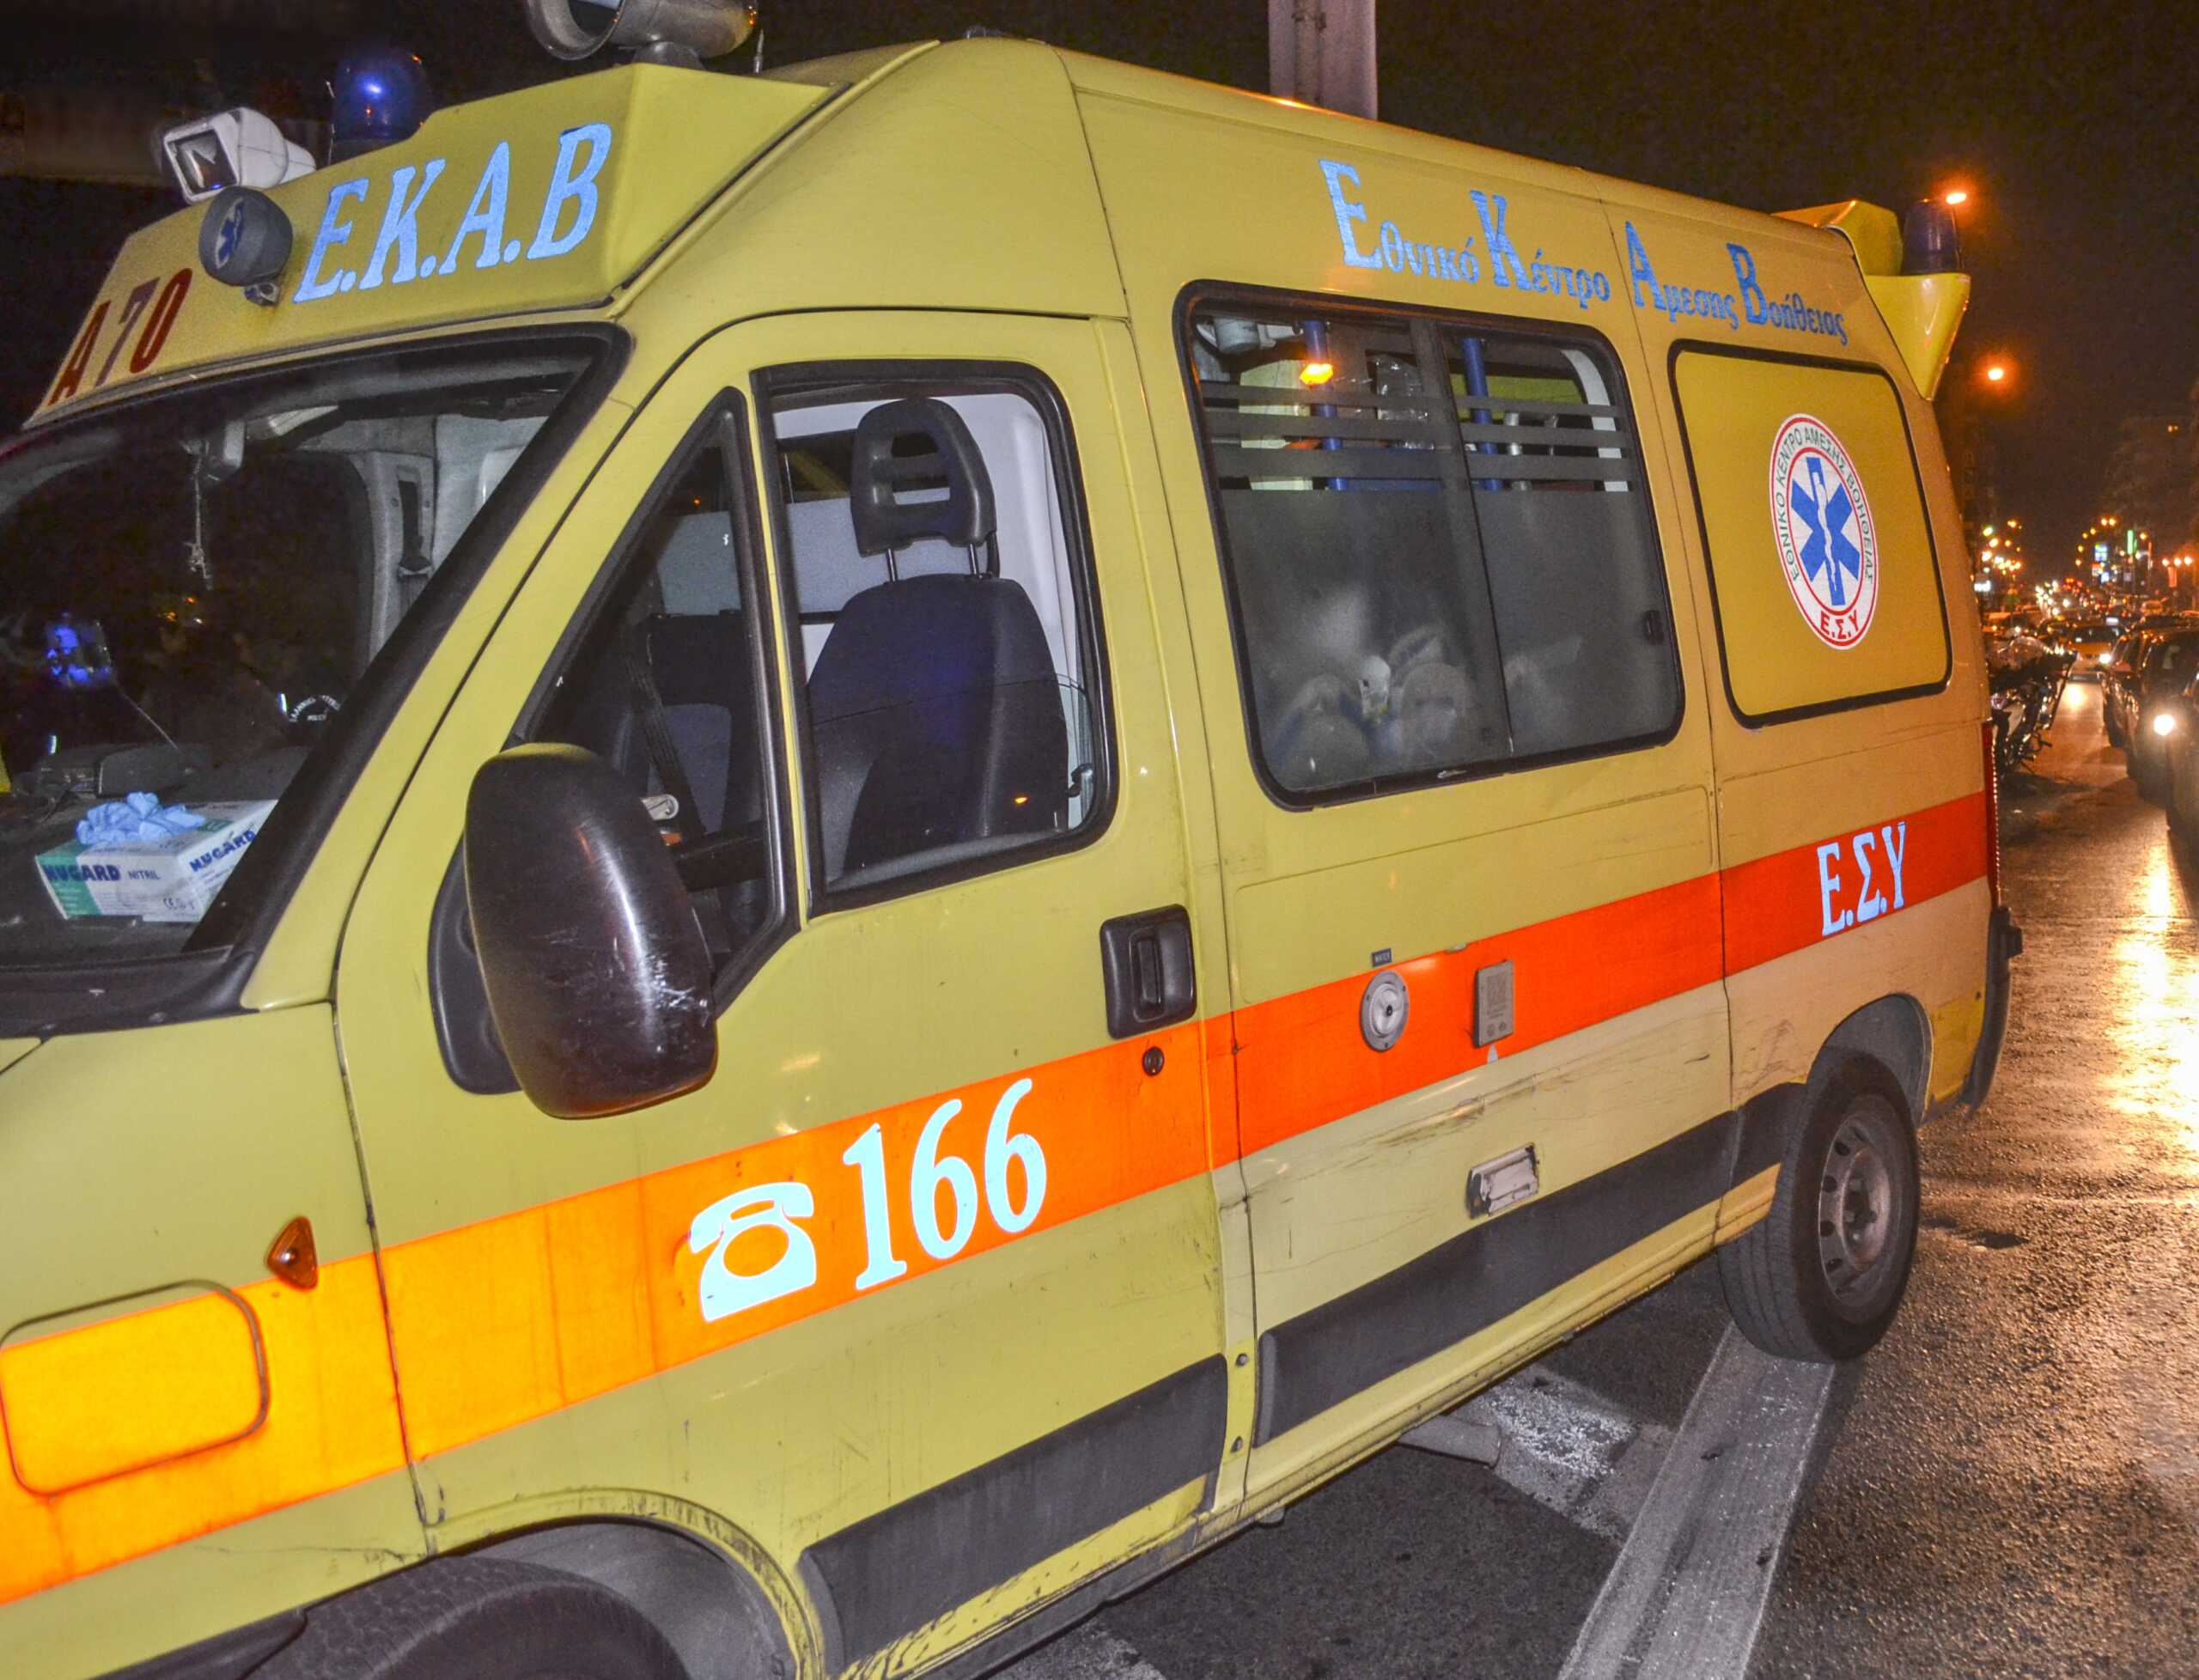 Κακαβιά: Επτά τραυματίες, ανάμεσά τους 4 παιδιά, σε τροχαίο